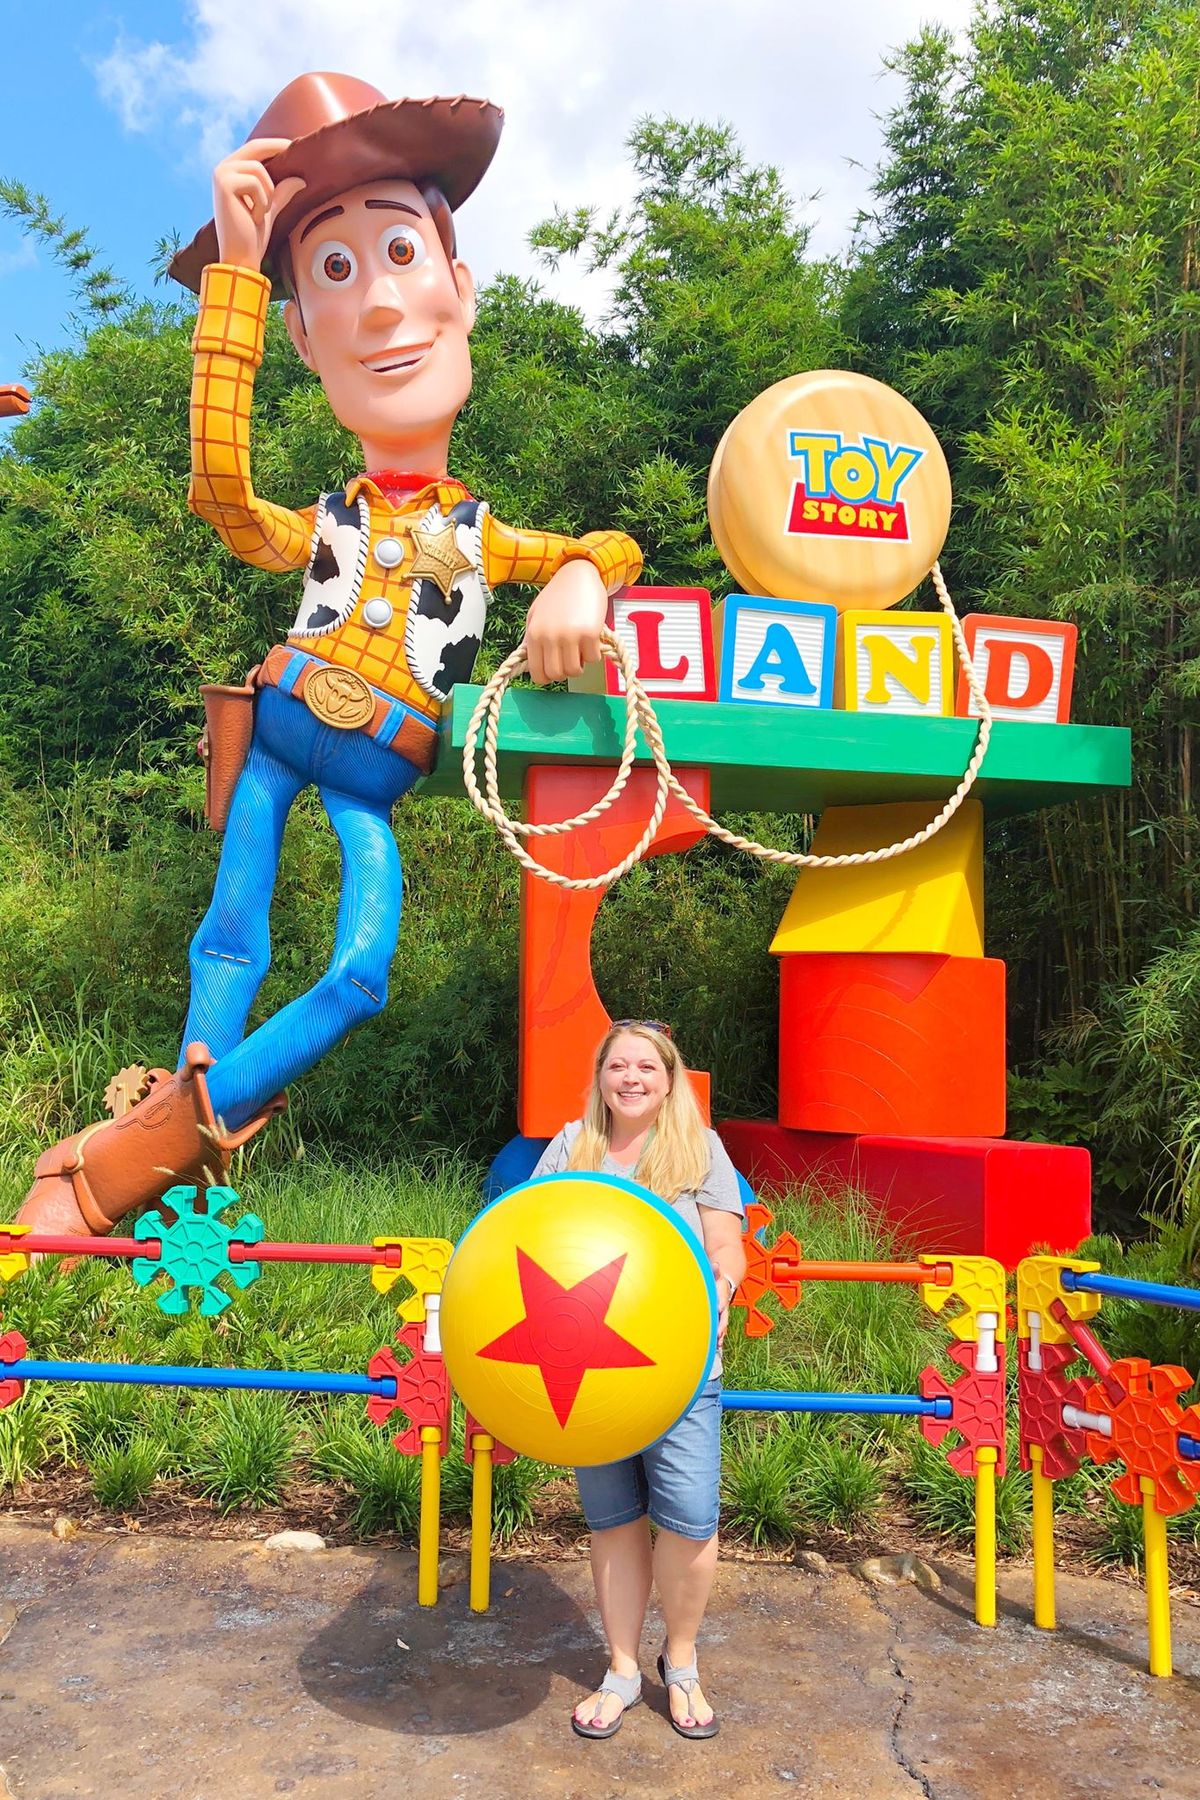 Llançament de la bola Luxo abans de la data d’obertura de Toy Story Land